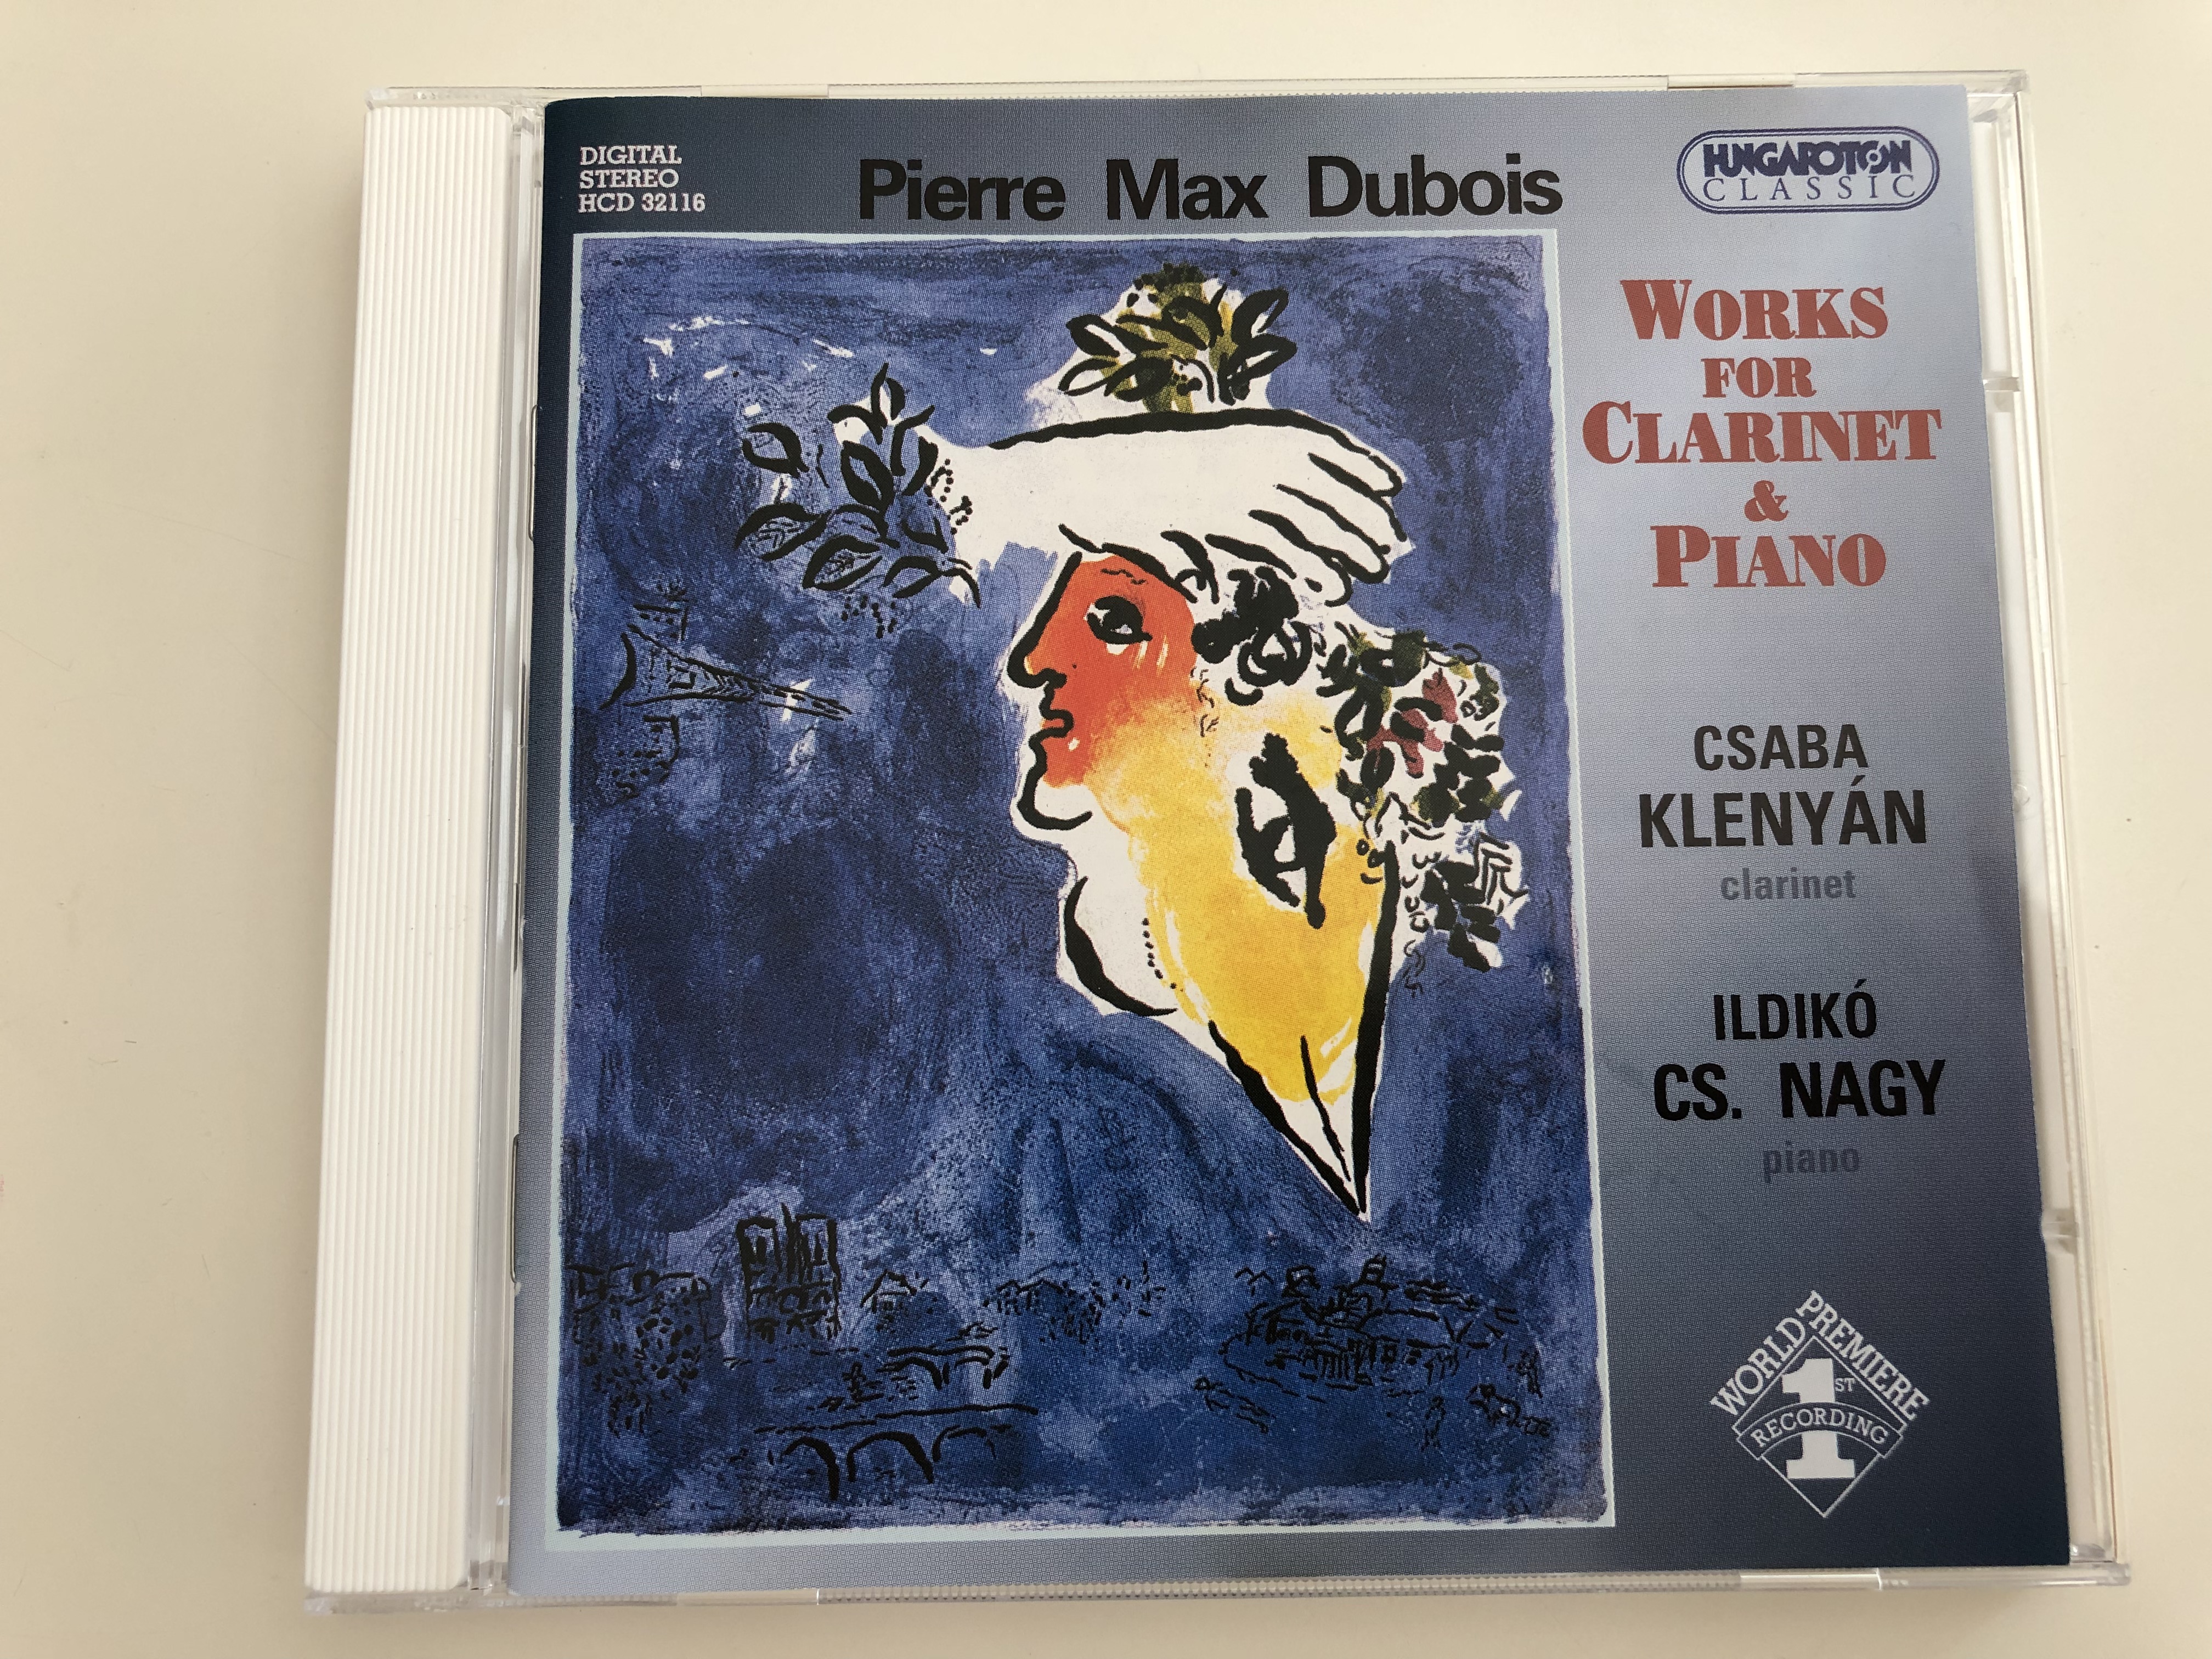 pierre-max-dubois-works-for-clarinet-piano-csaba-kleny-n-clarinet-ildik-cs.-nagy-piano-hungaroton-classic-audio-cd-2003-hcd-32116-1-.jpg